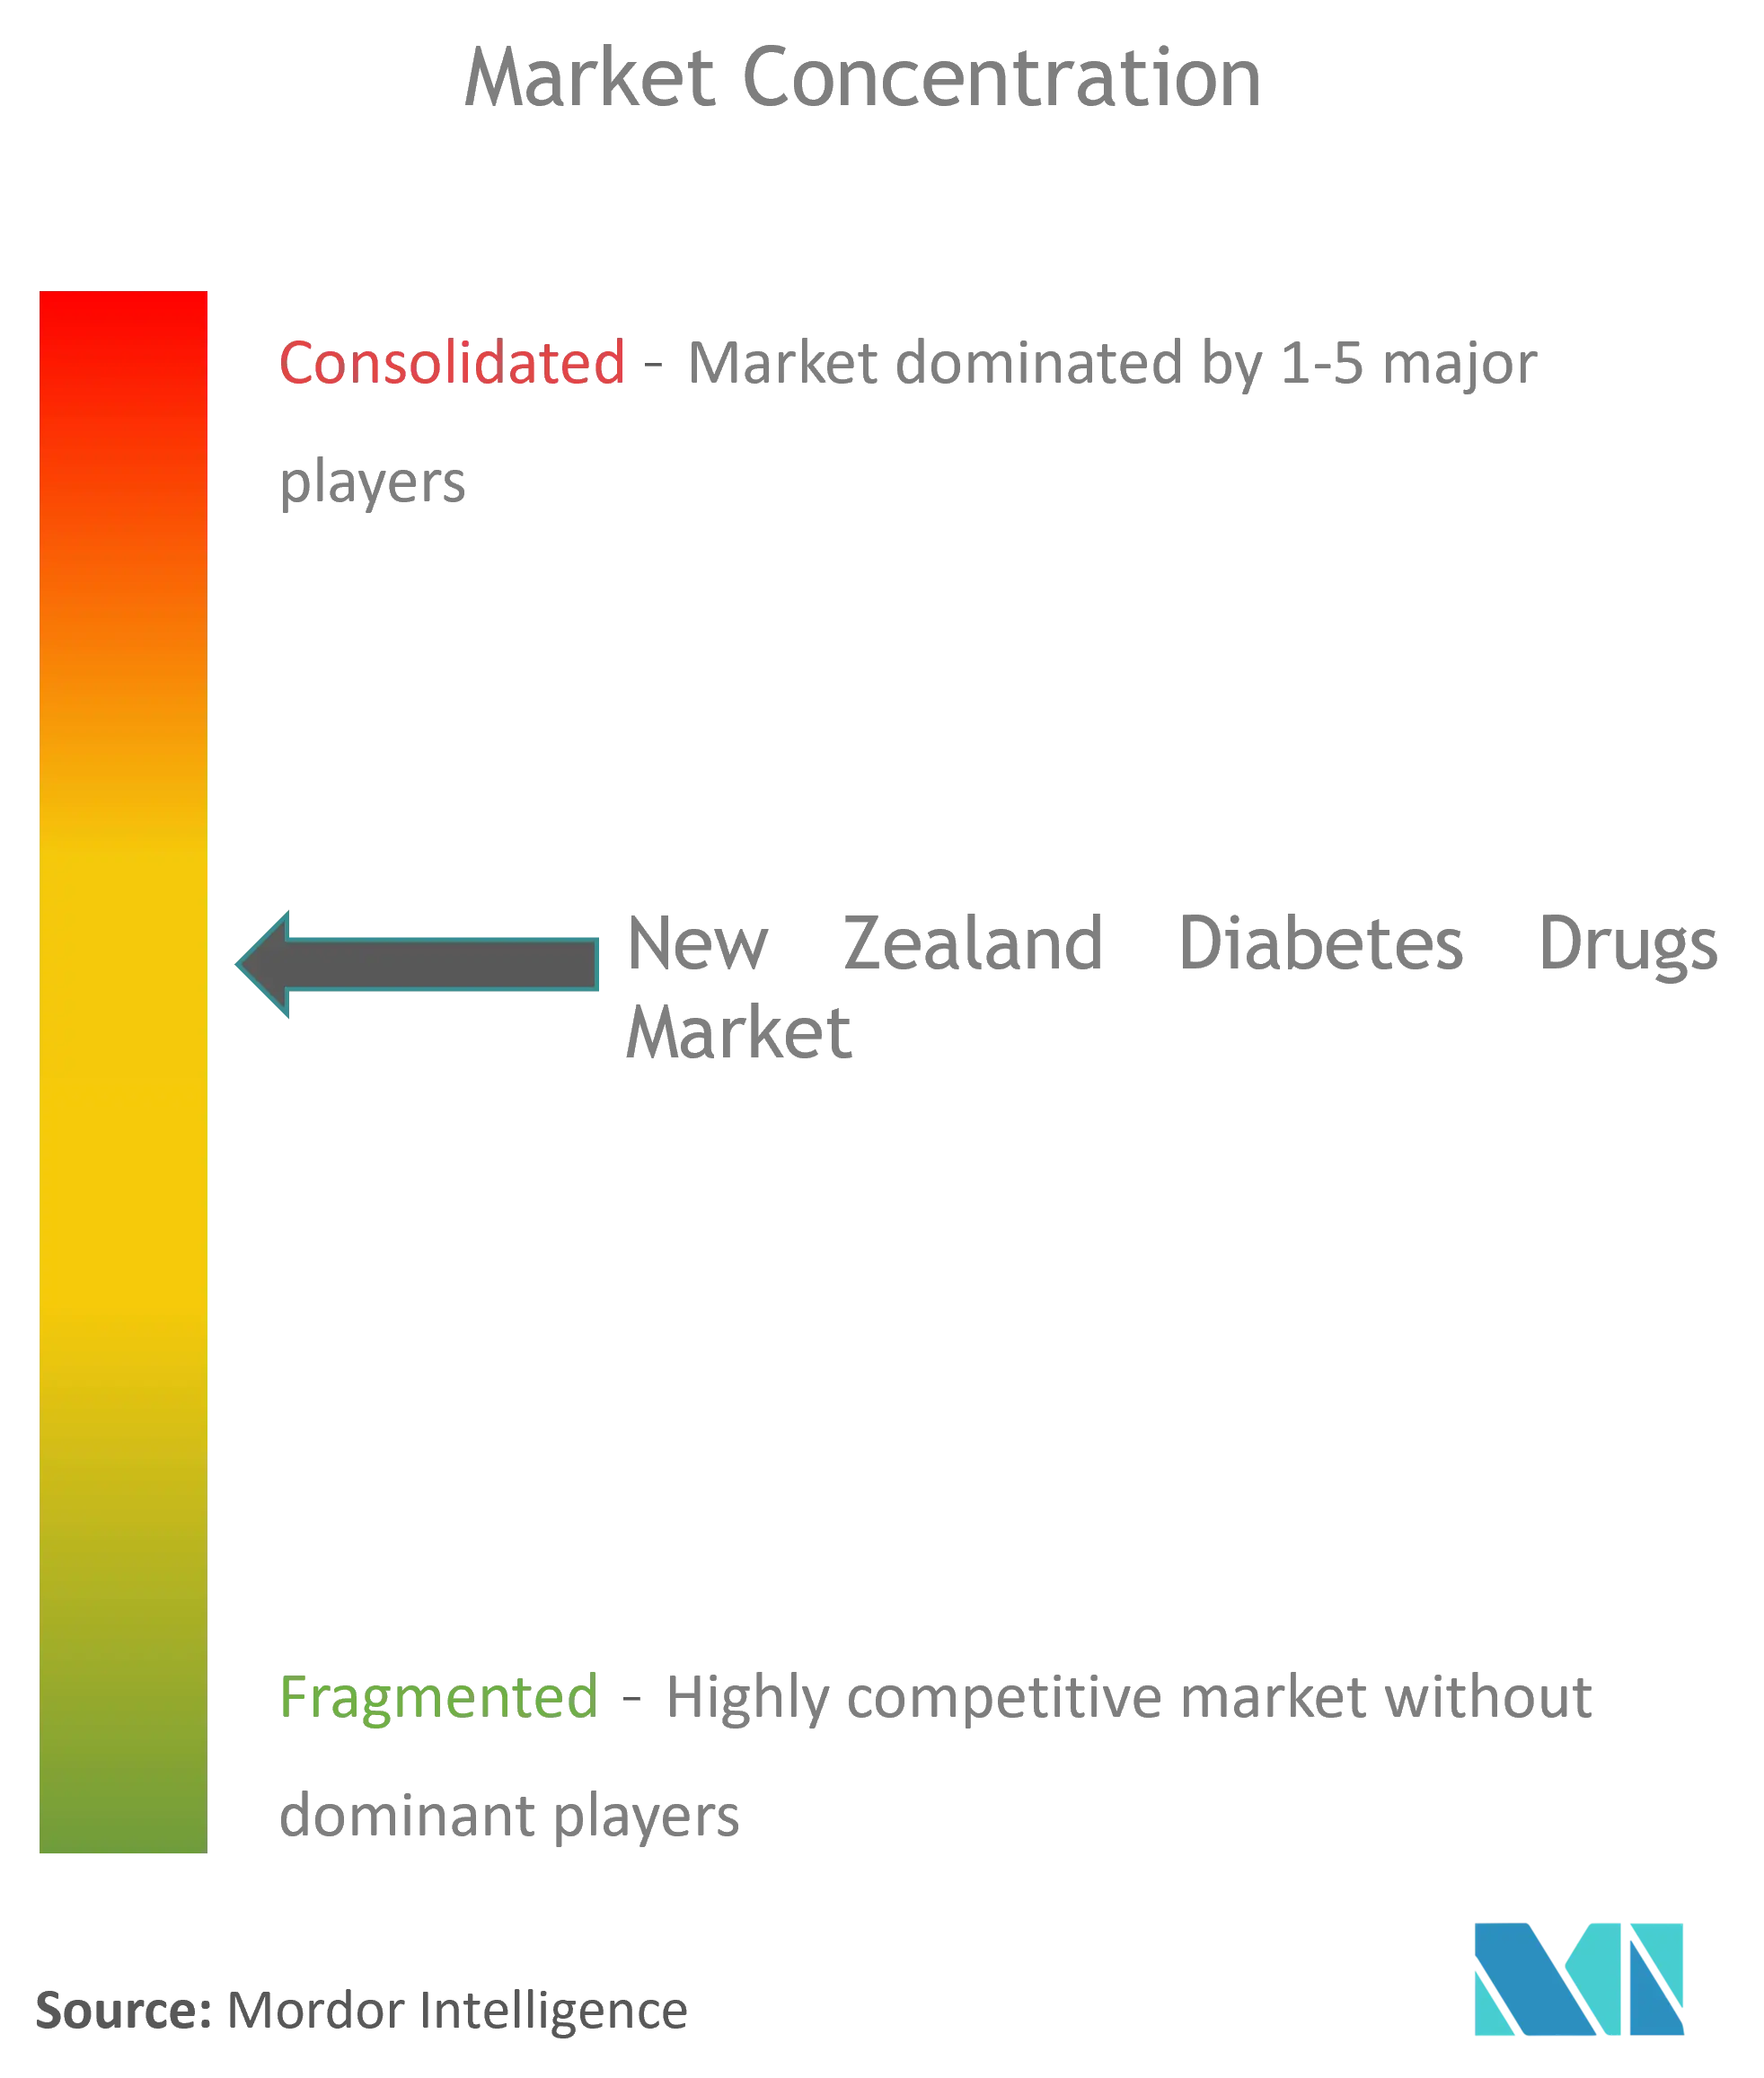 ニュージーランドの糖尿病薬市場集中度